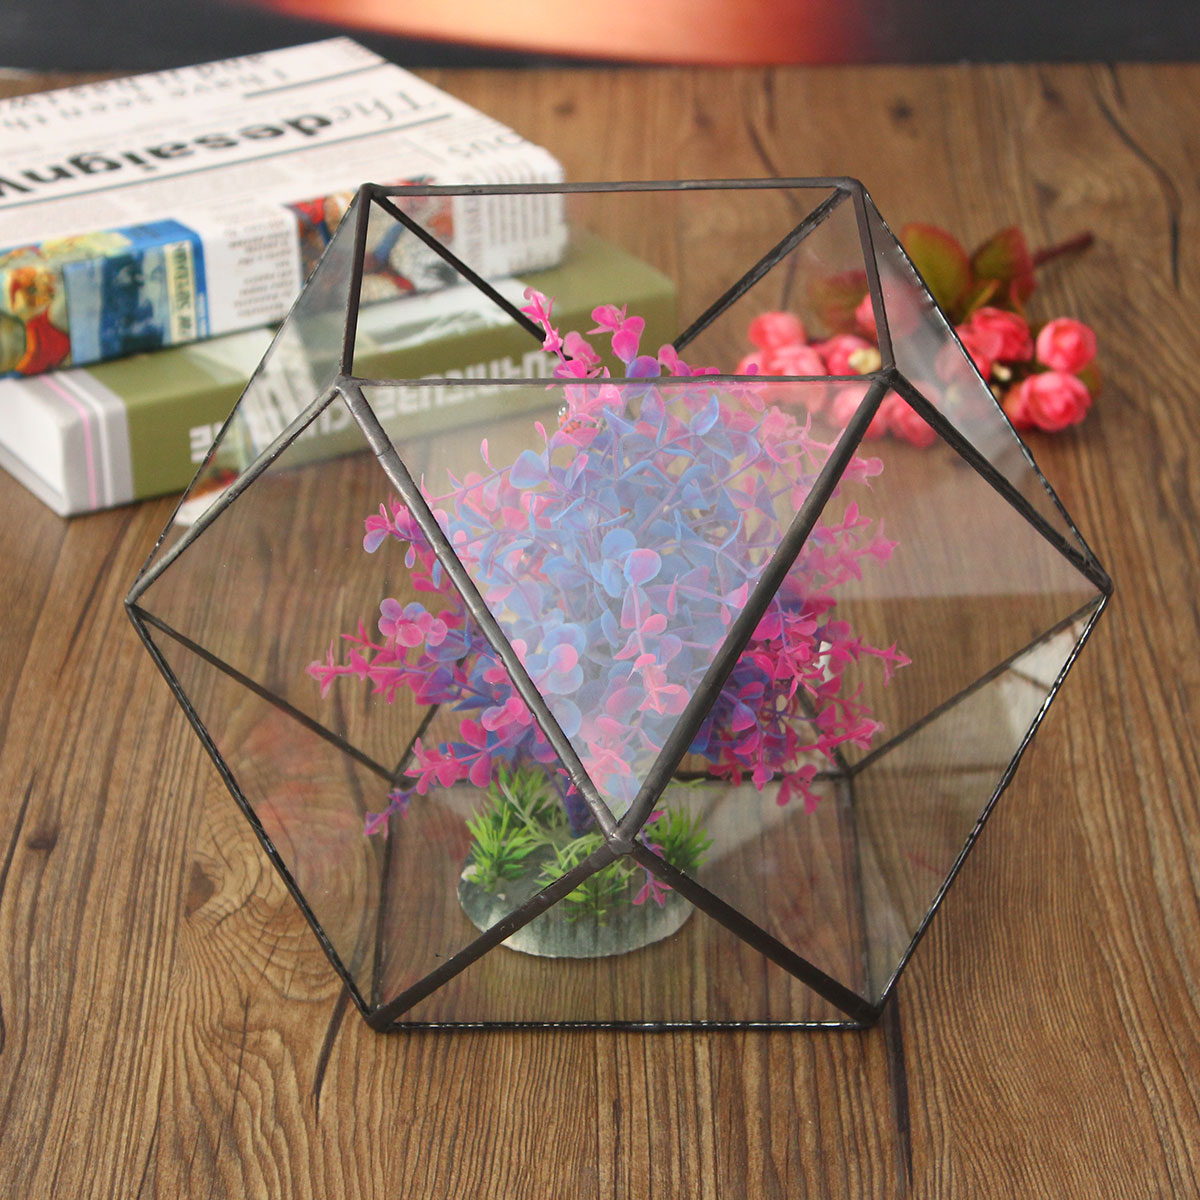 Polygon-Greenhouse-Glass-Terrarium-DIY-Micro-Landscape-Succulent-Plants-Flower-Pot-1096449-1